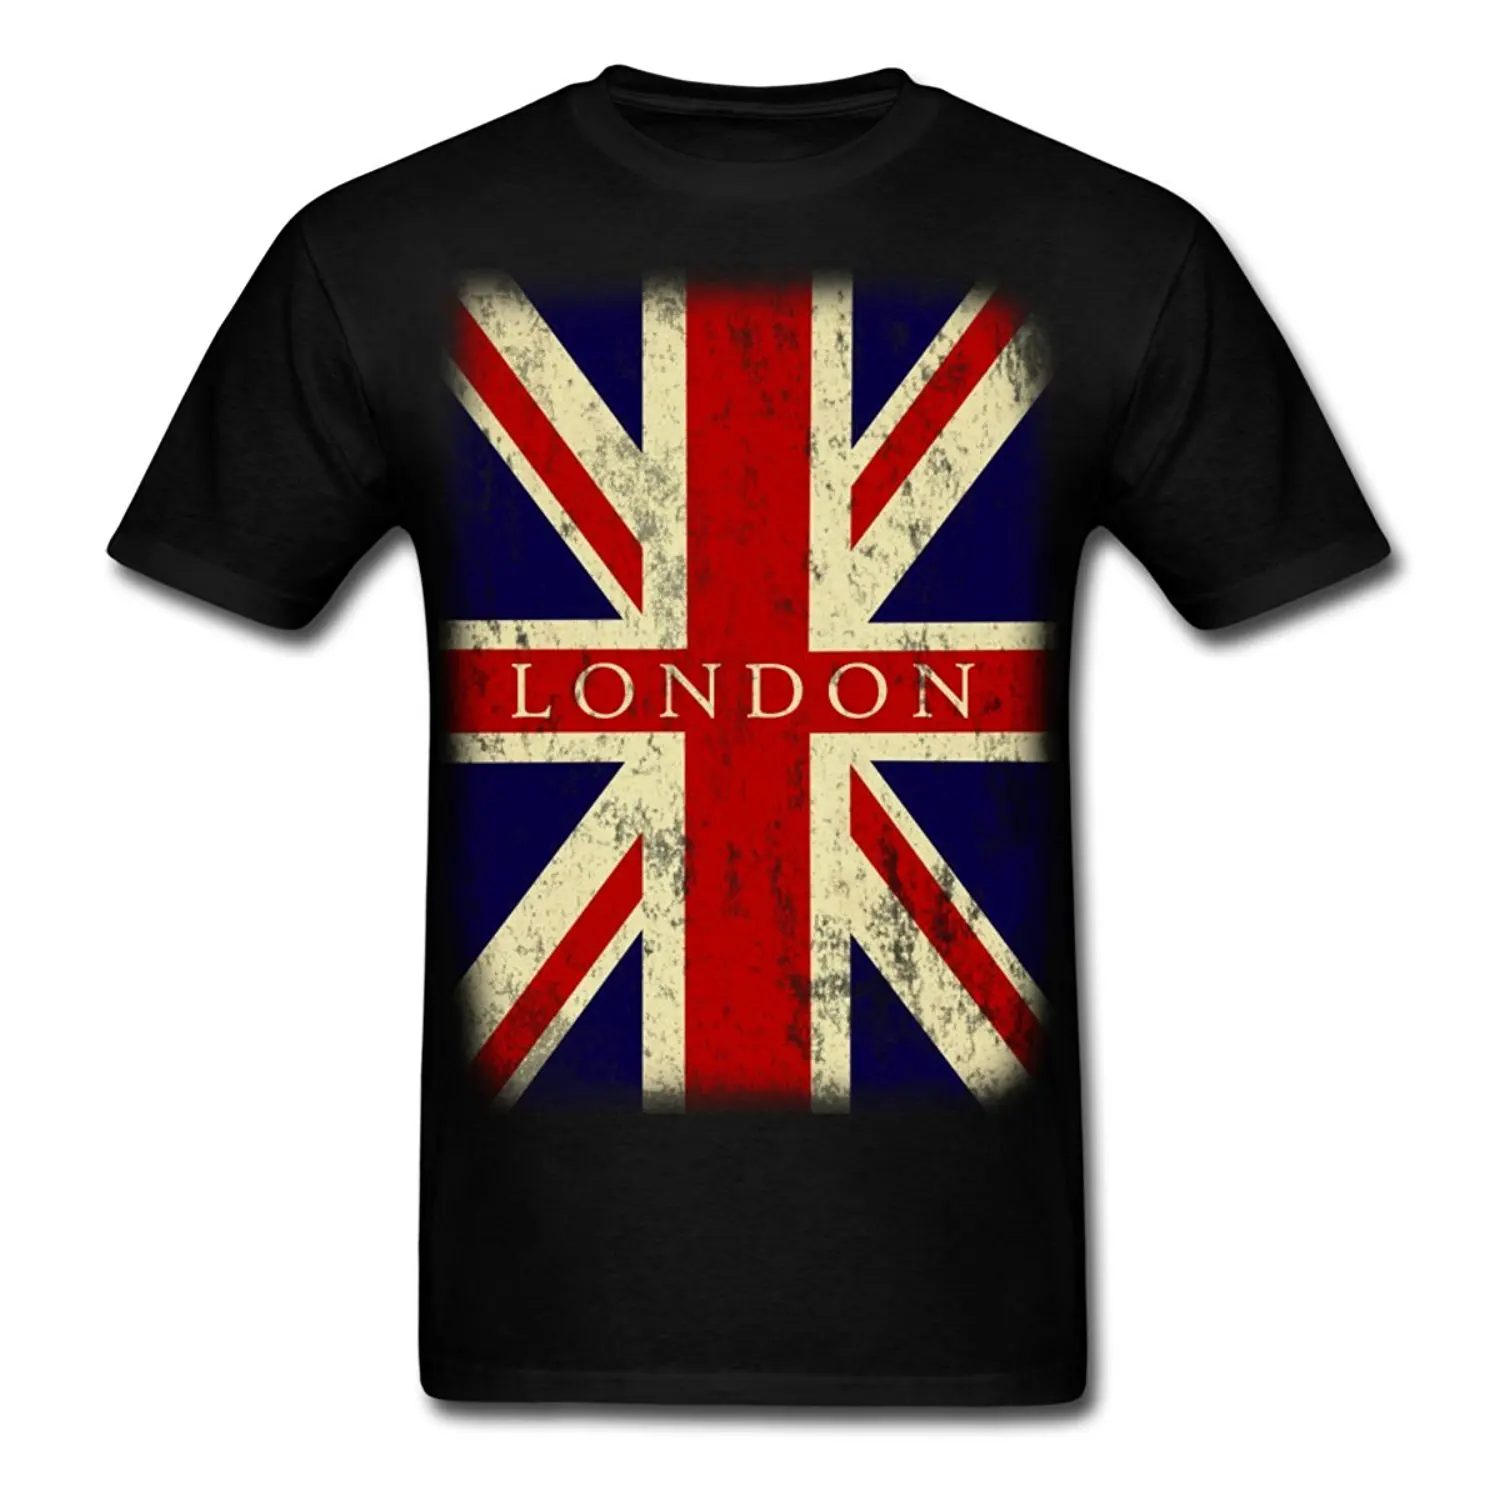 Mens T Shirts London Luxembourg, - mpgc.net